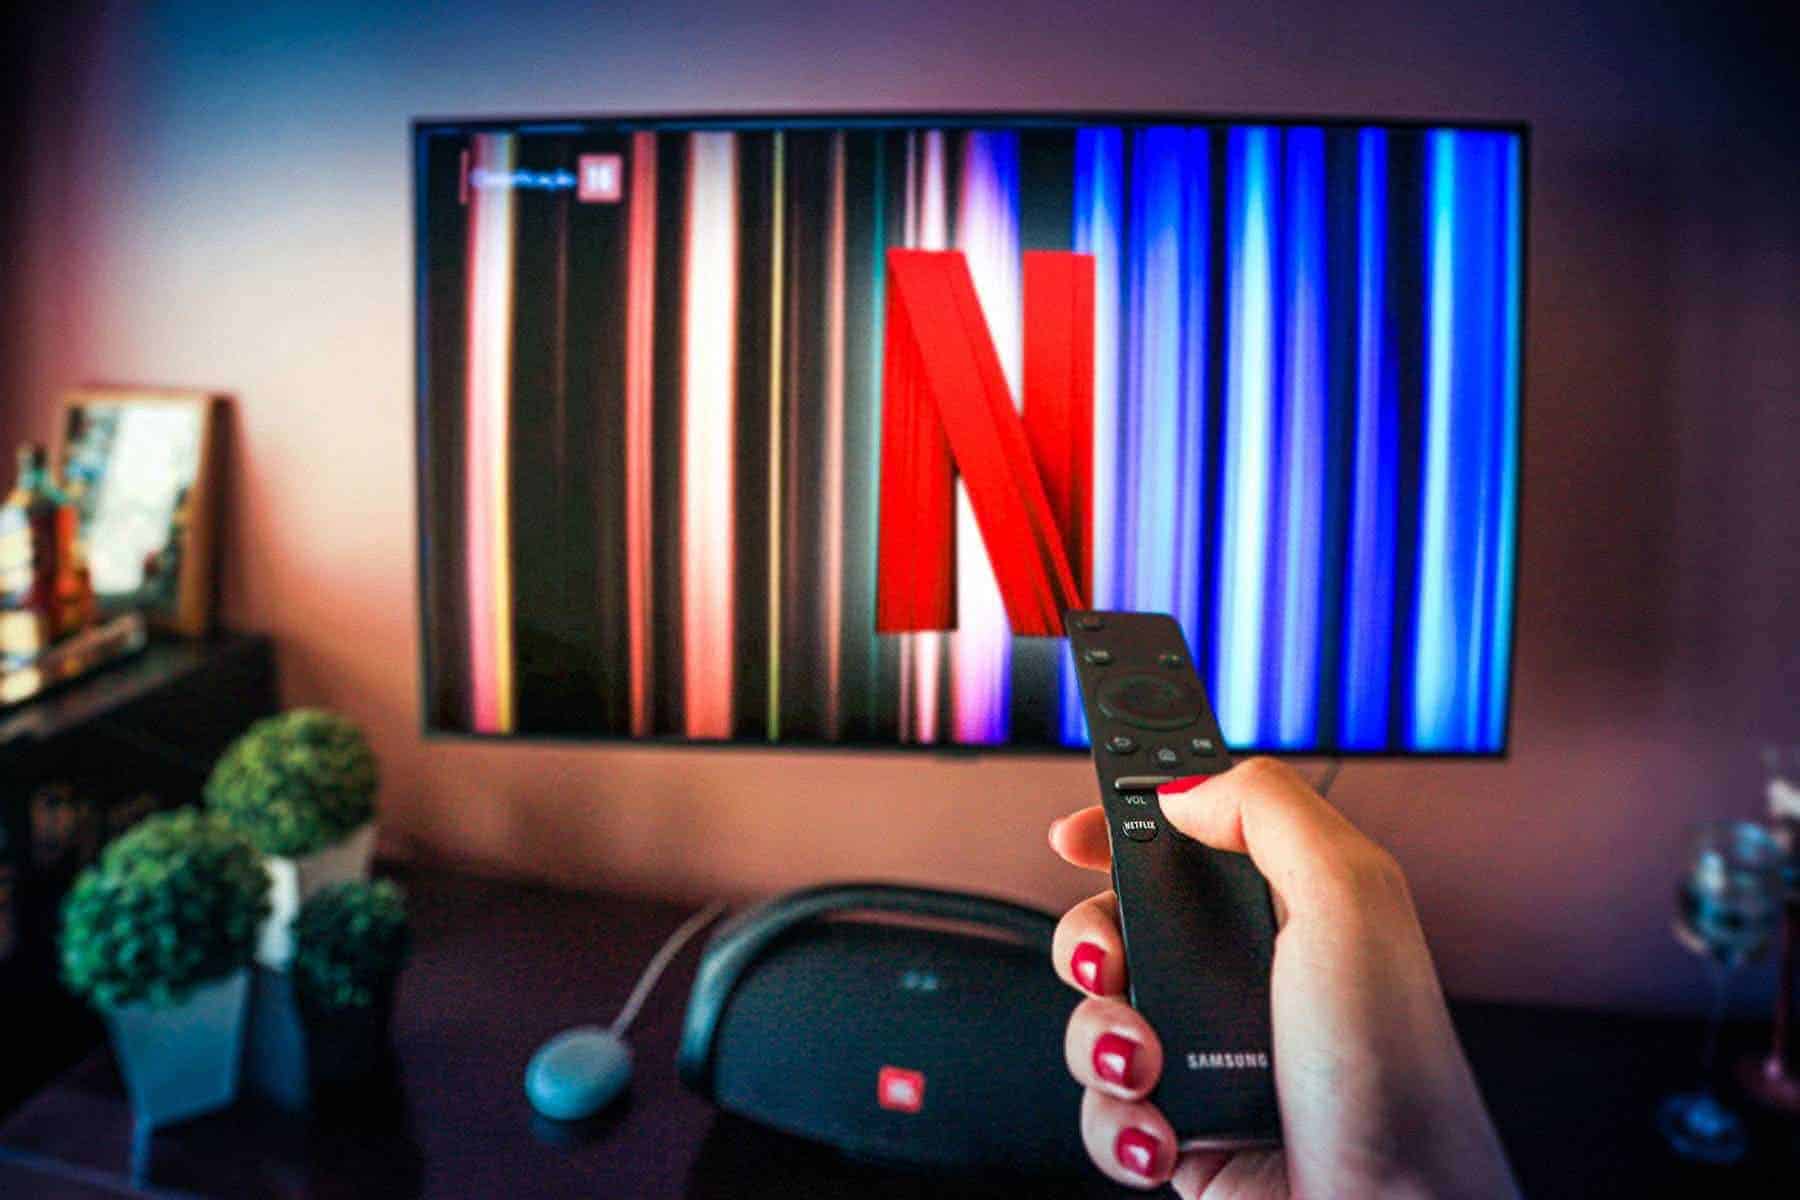 Netflix começa a cobrar taxa extra para compartilhamento de contas